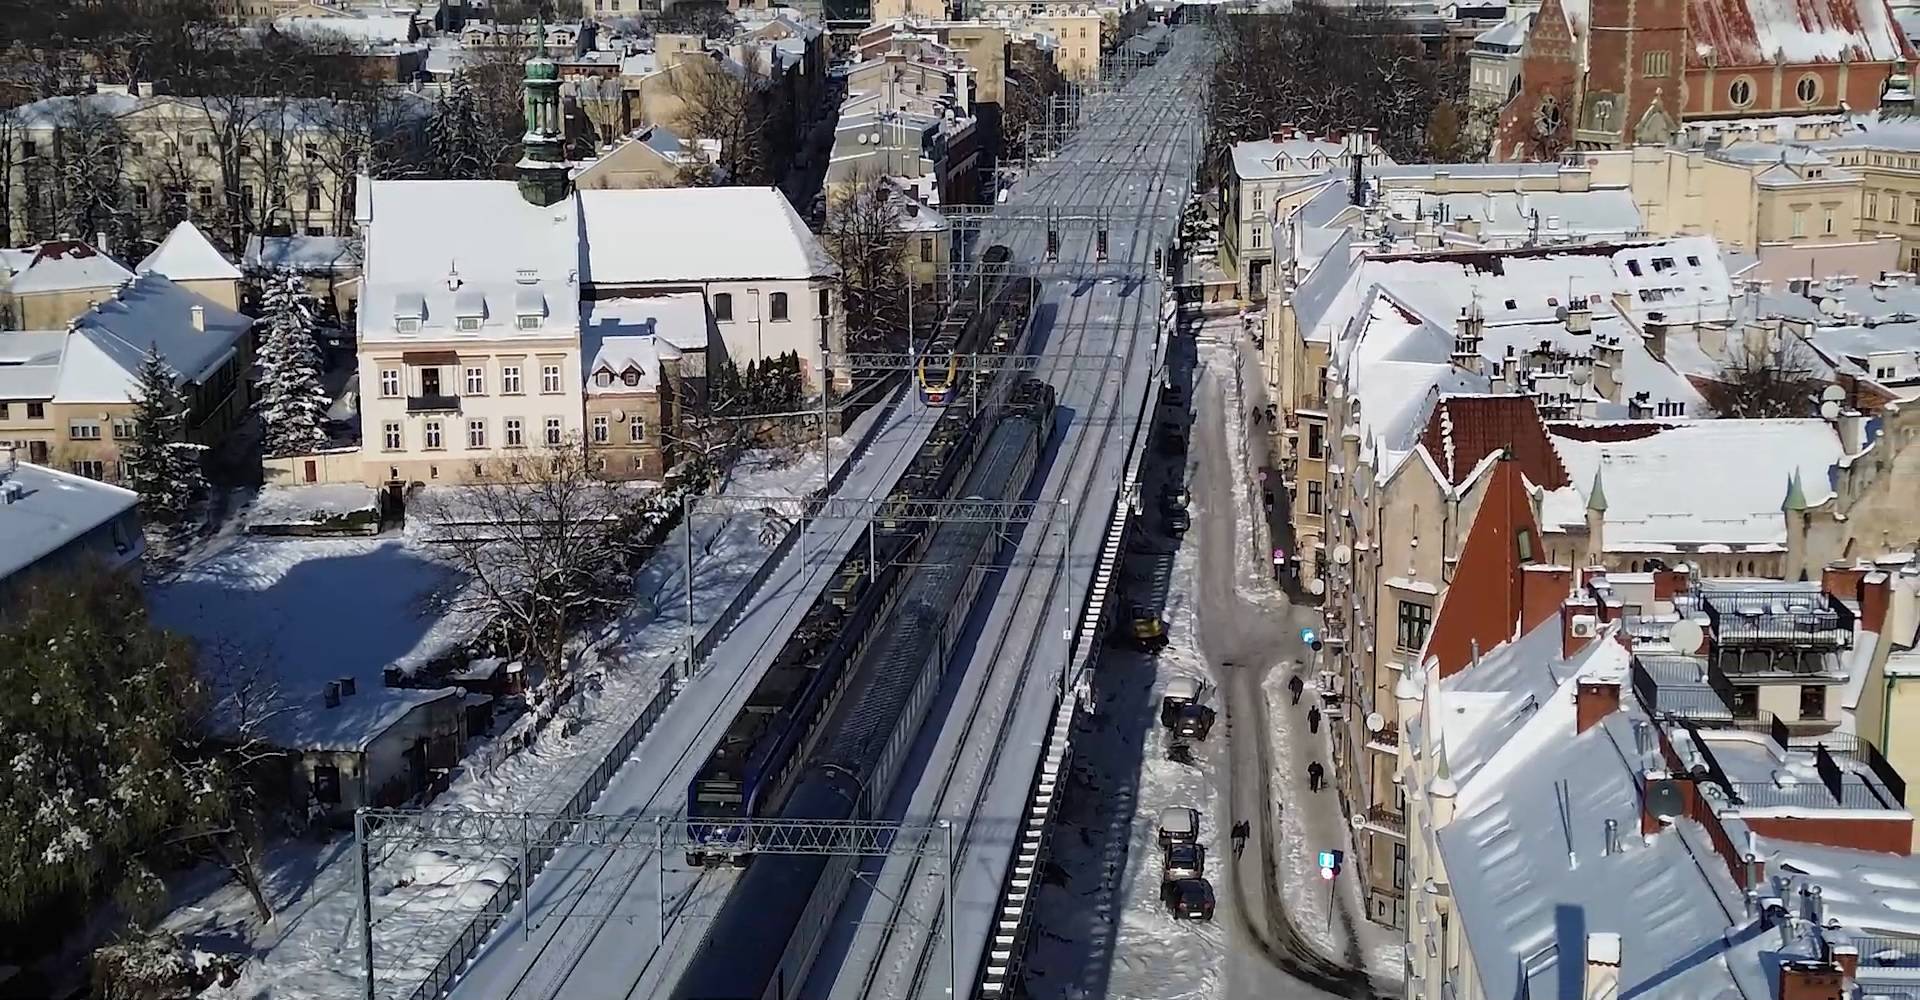 Powraca "Luxtorpeda" do Zakopanego i "Beliansky Express"